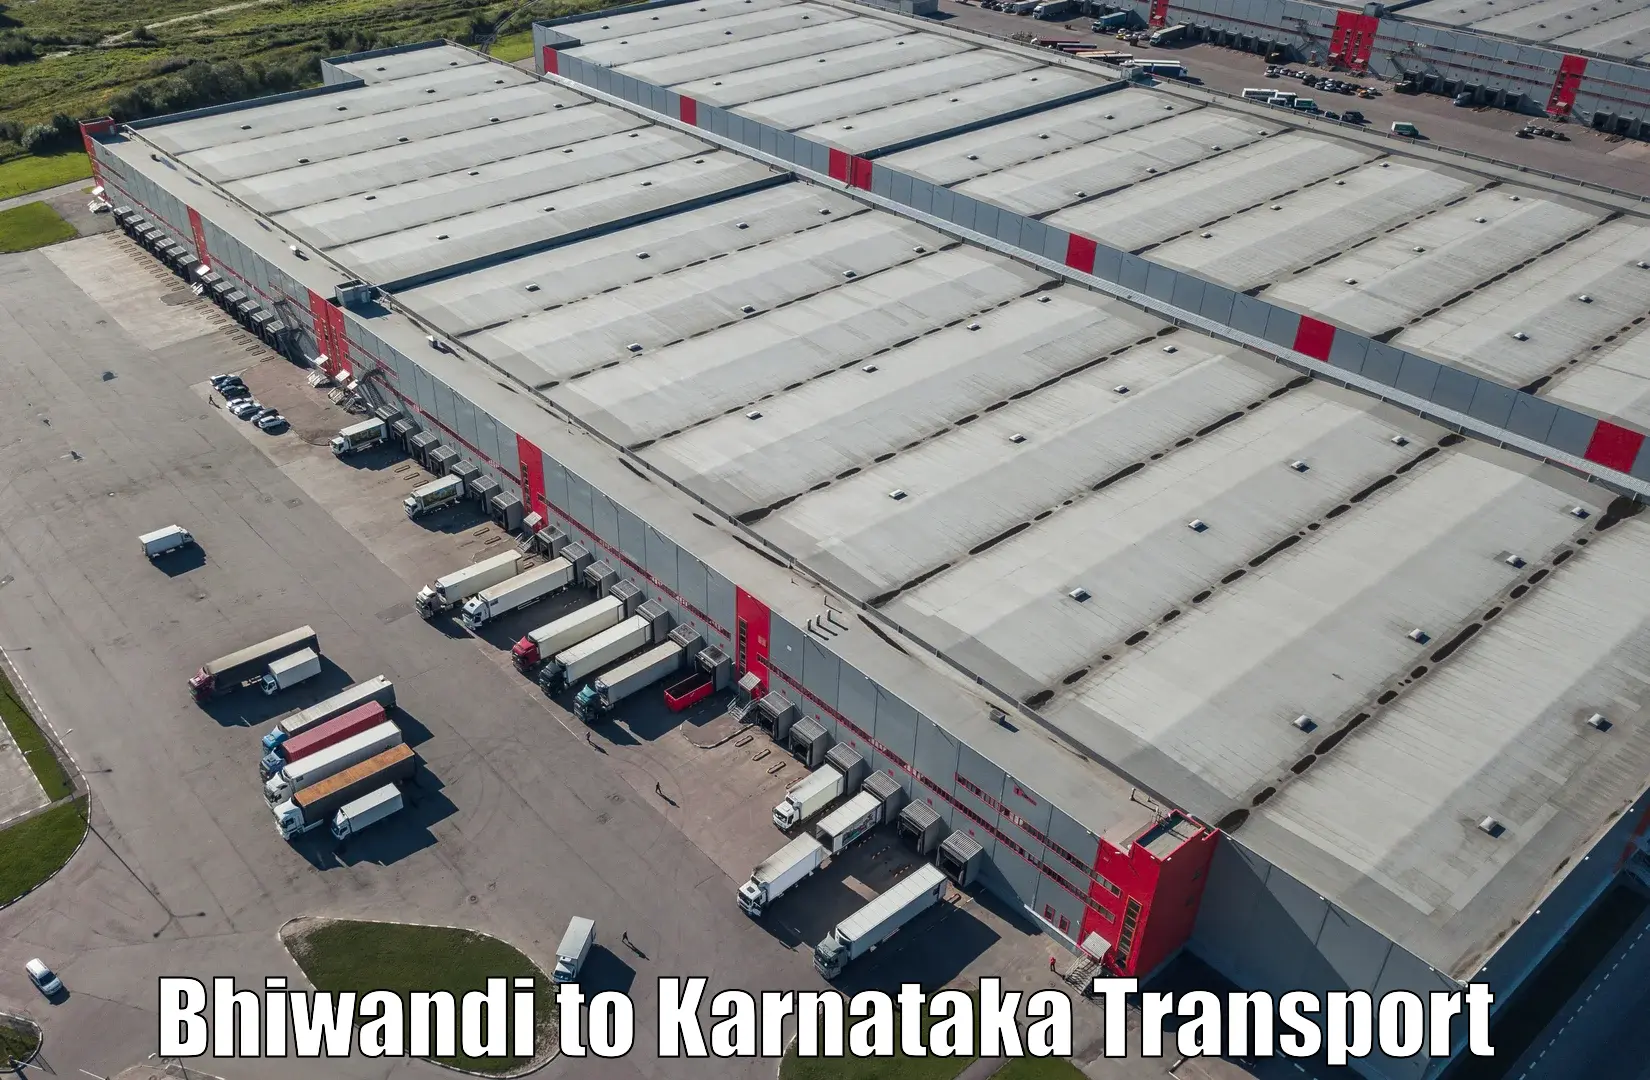 Daily transport service Bhiwandi to Kumta